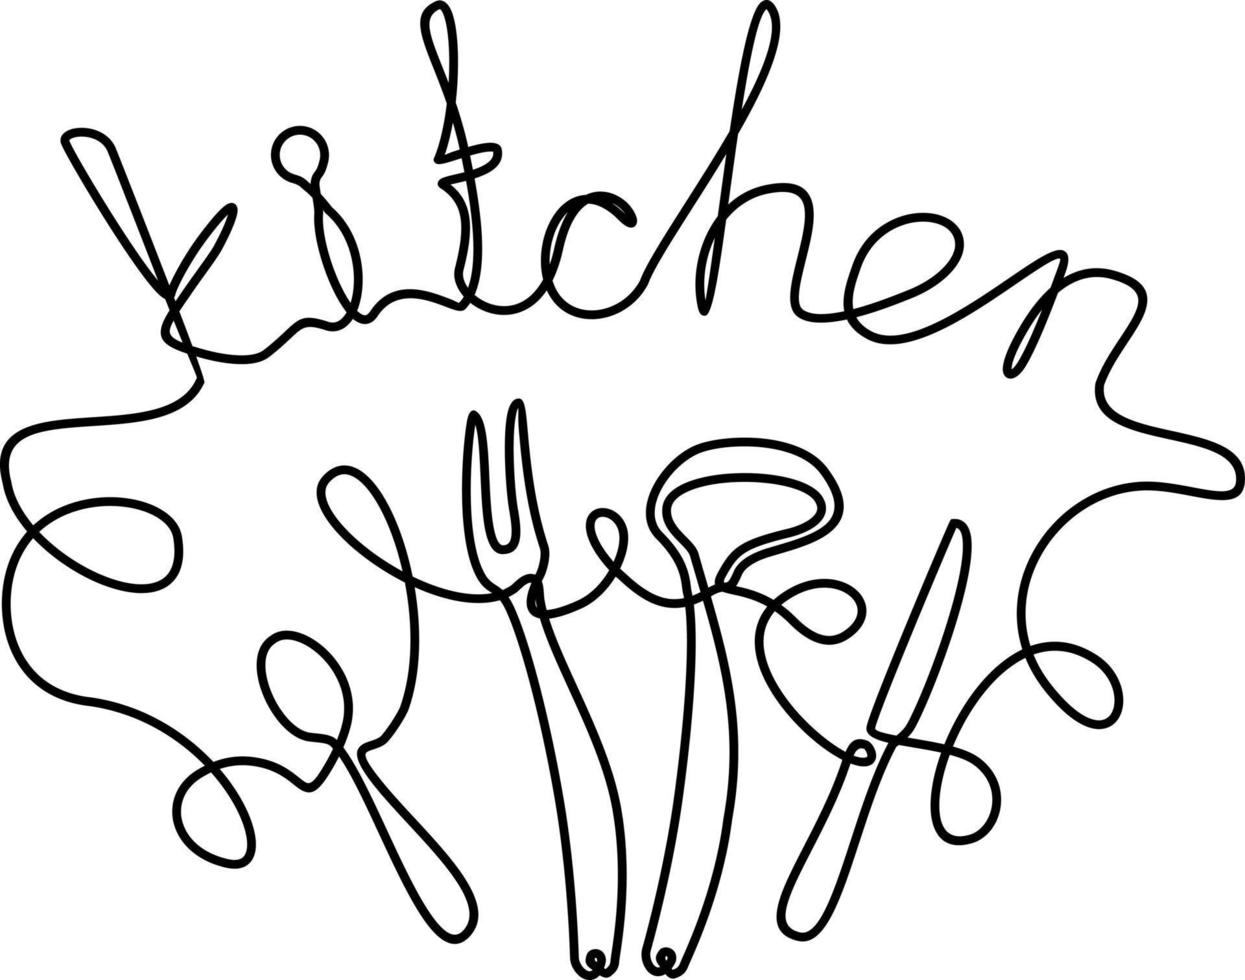 Kitchen. Phrase handwritten by one line. Monoline vector text element